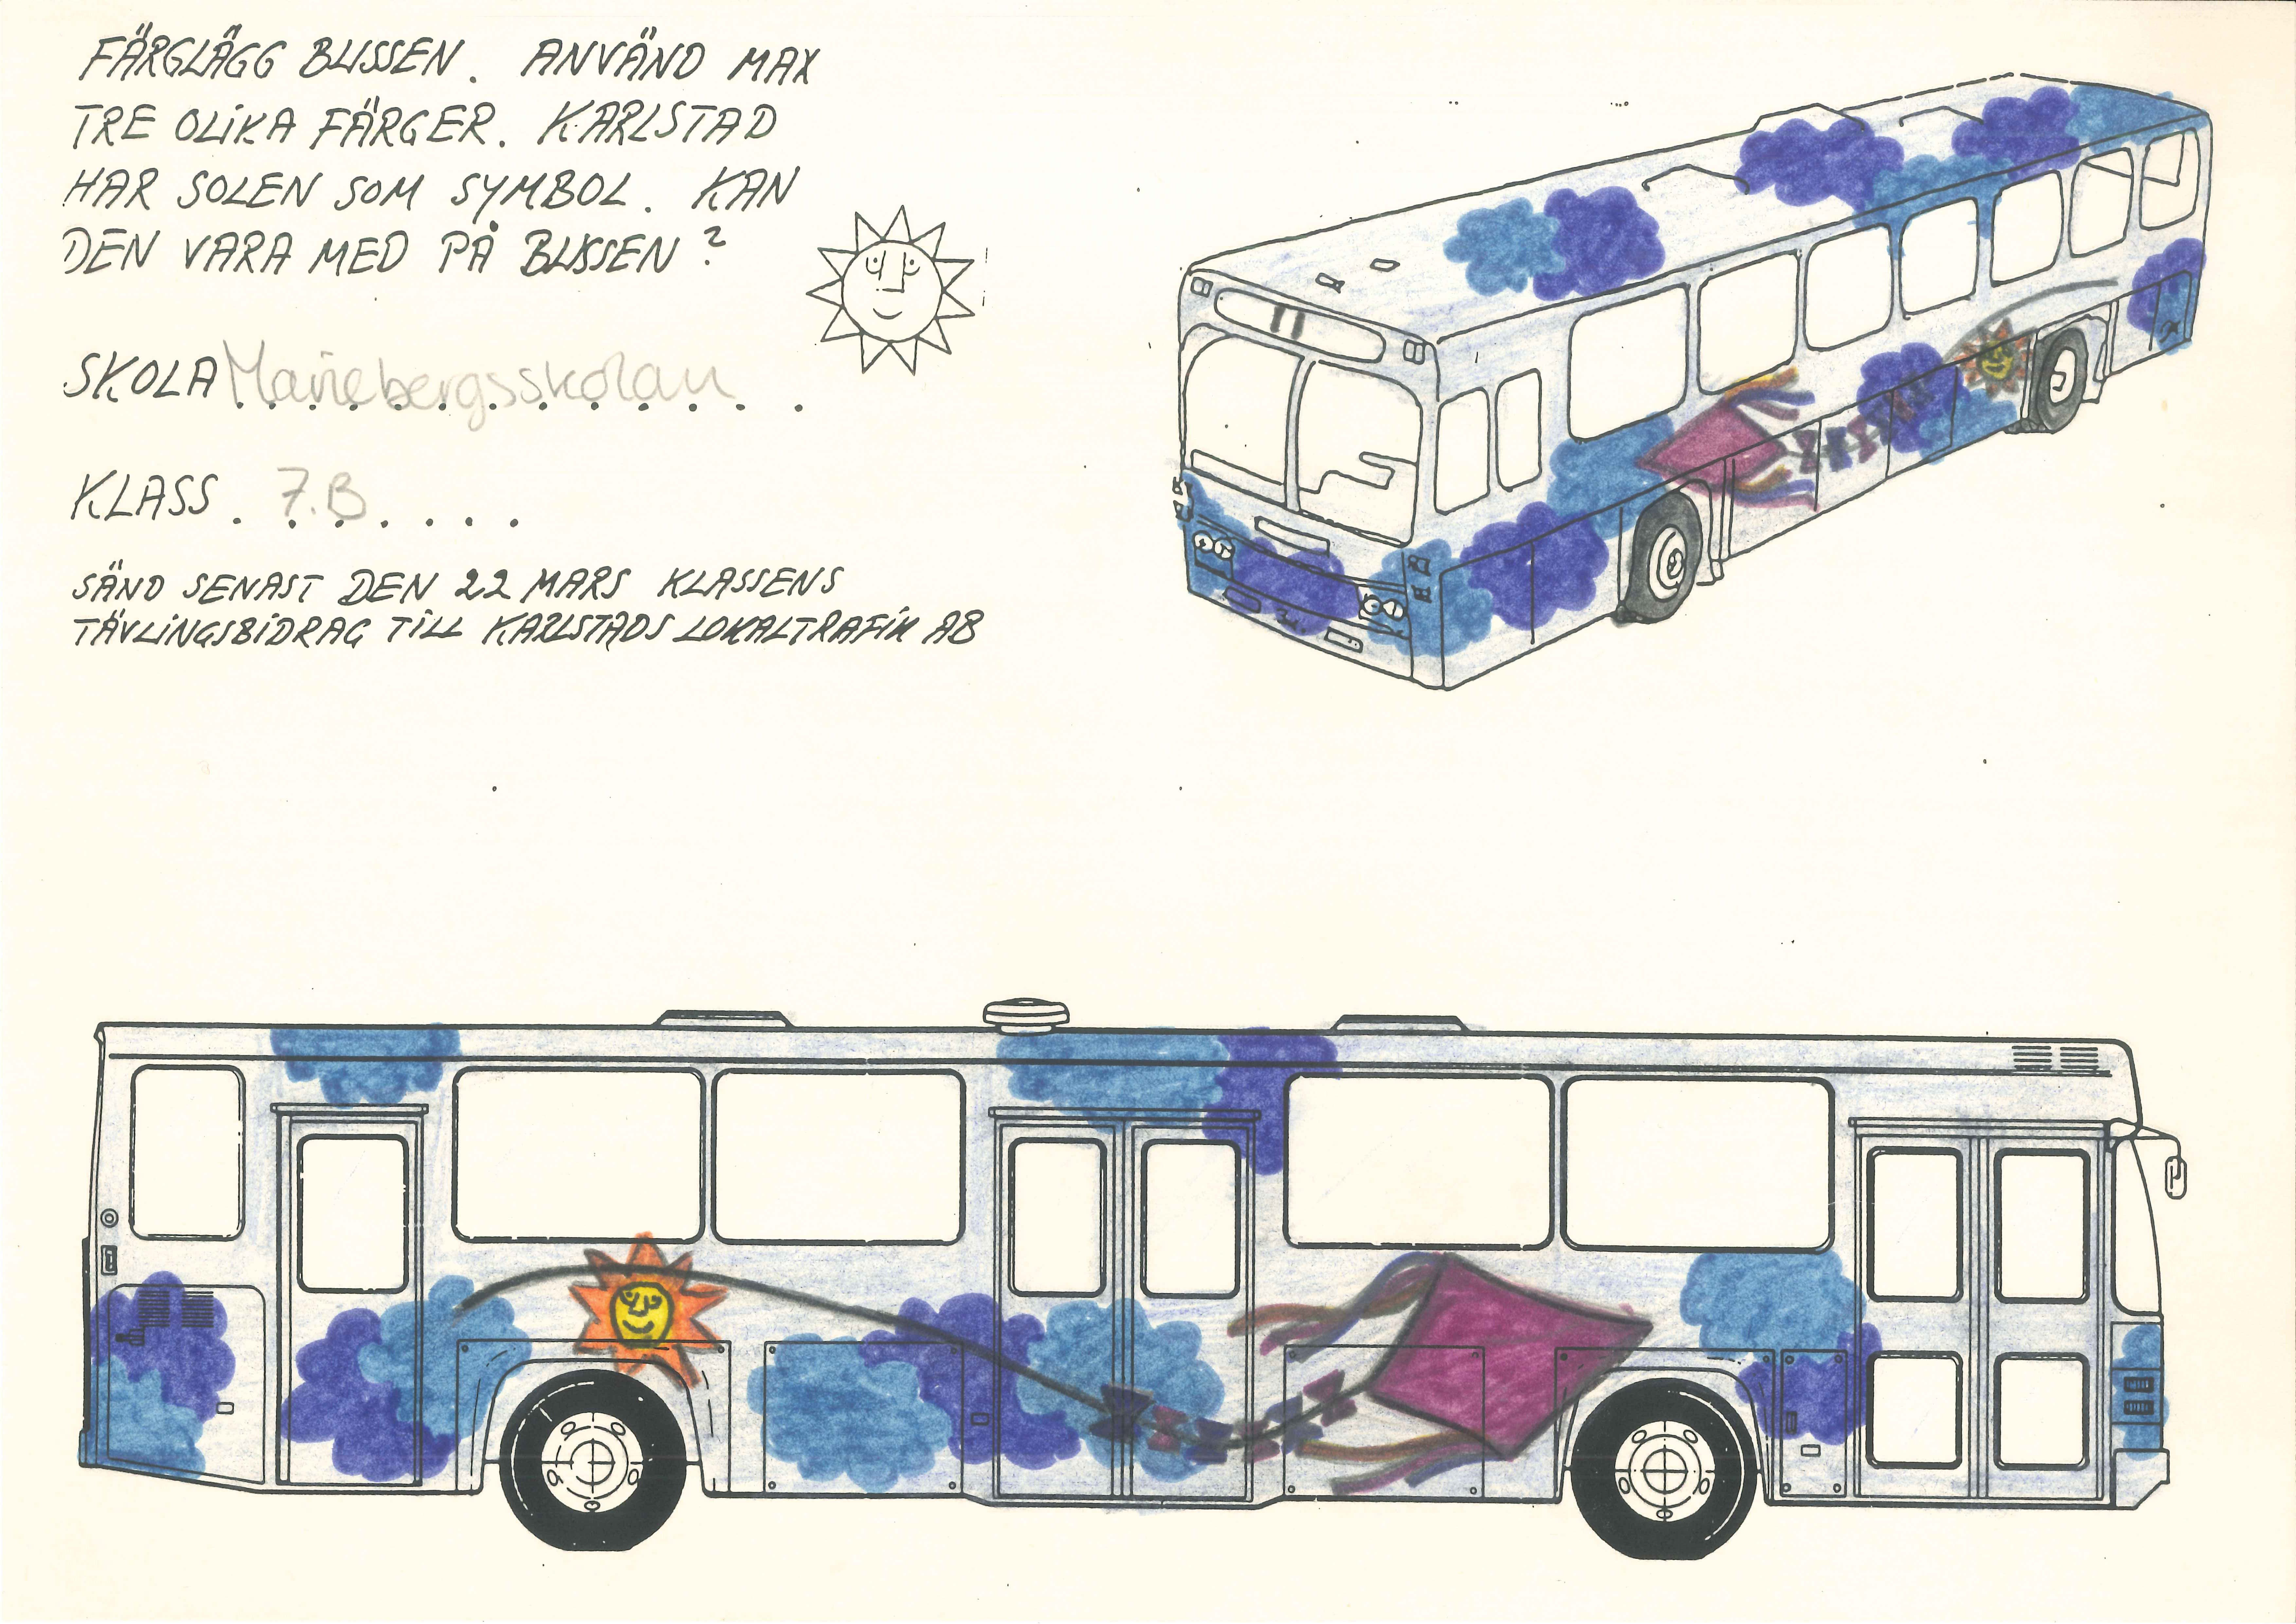 Ett av bidragen till bussdesigntävling 1989. En lila drake och blåa moln